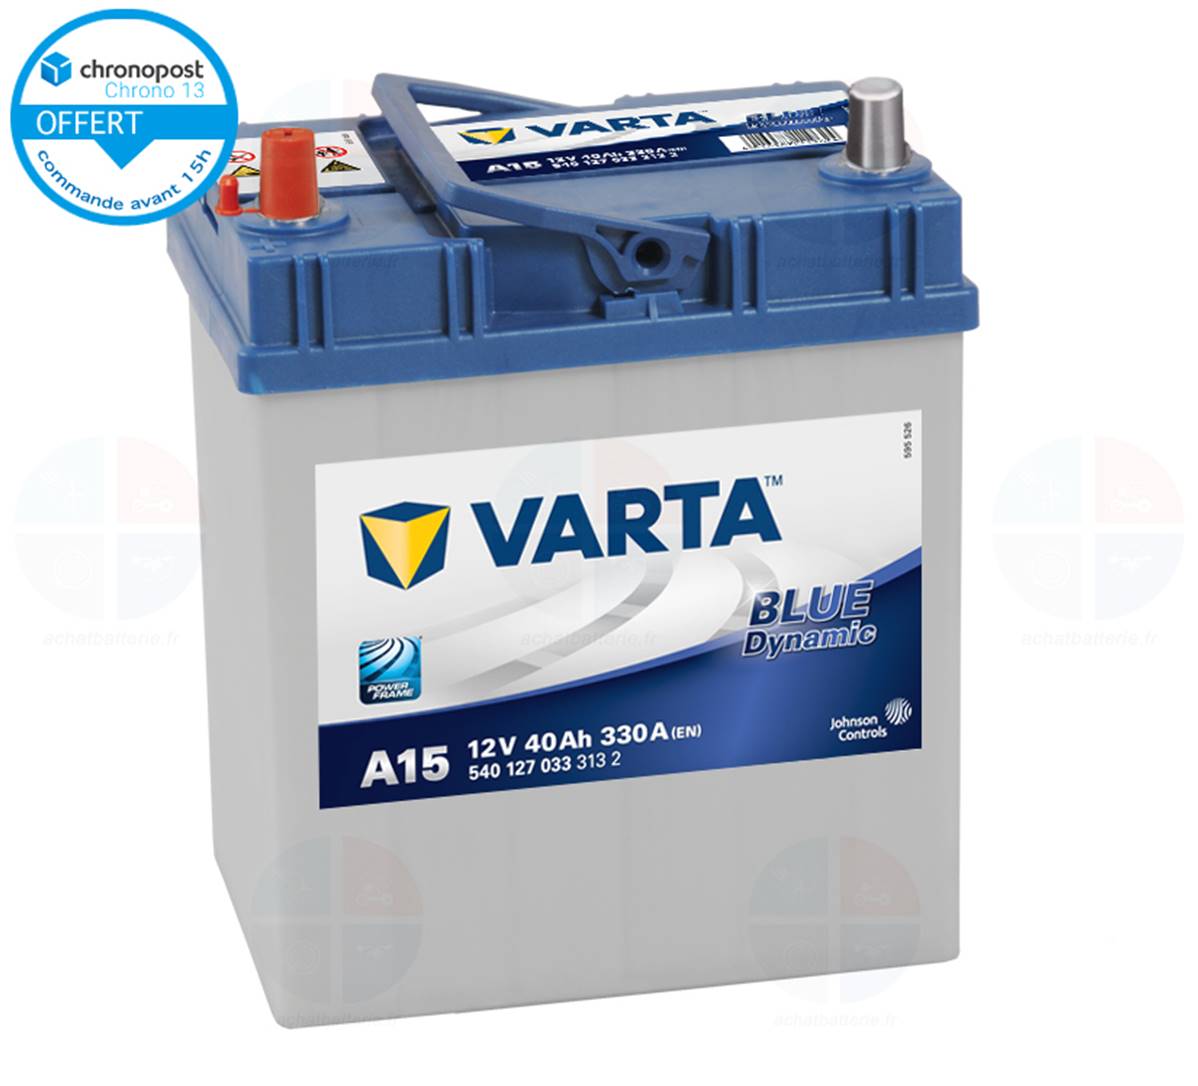 Batterie auto A1512V 40ah/330A VARTA Blue dynamic, batterie de